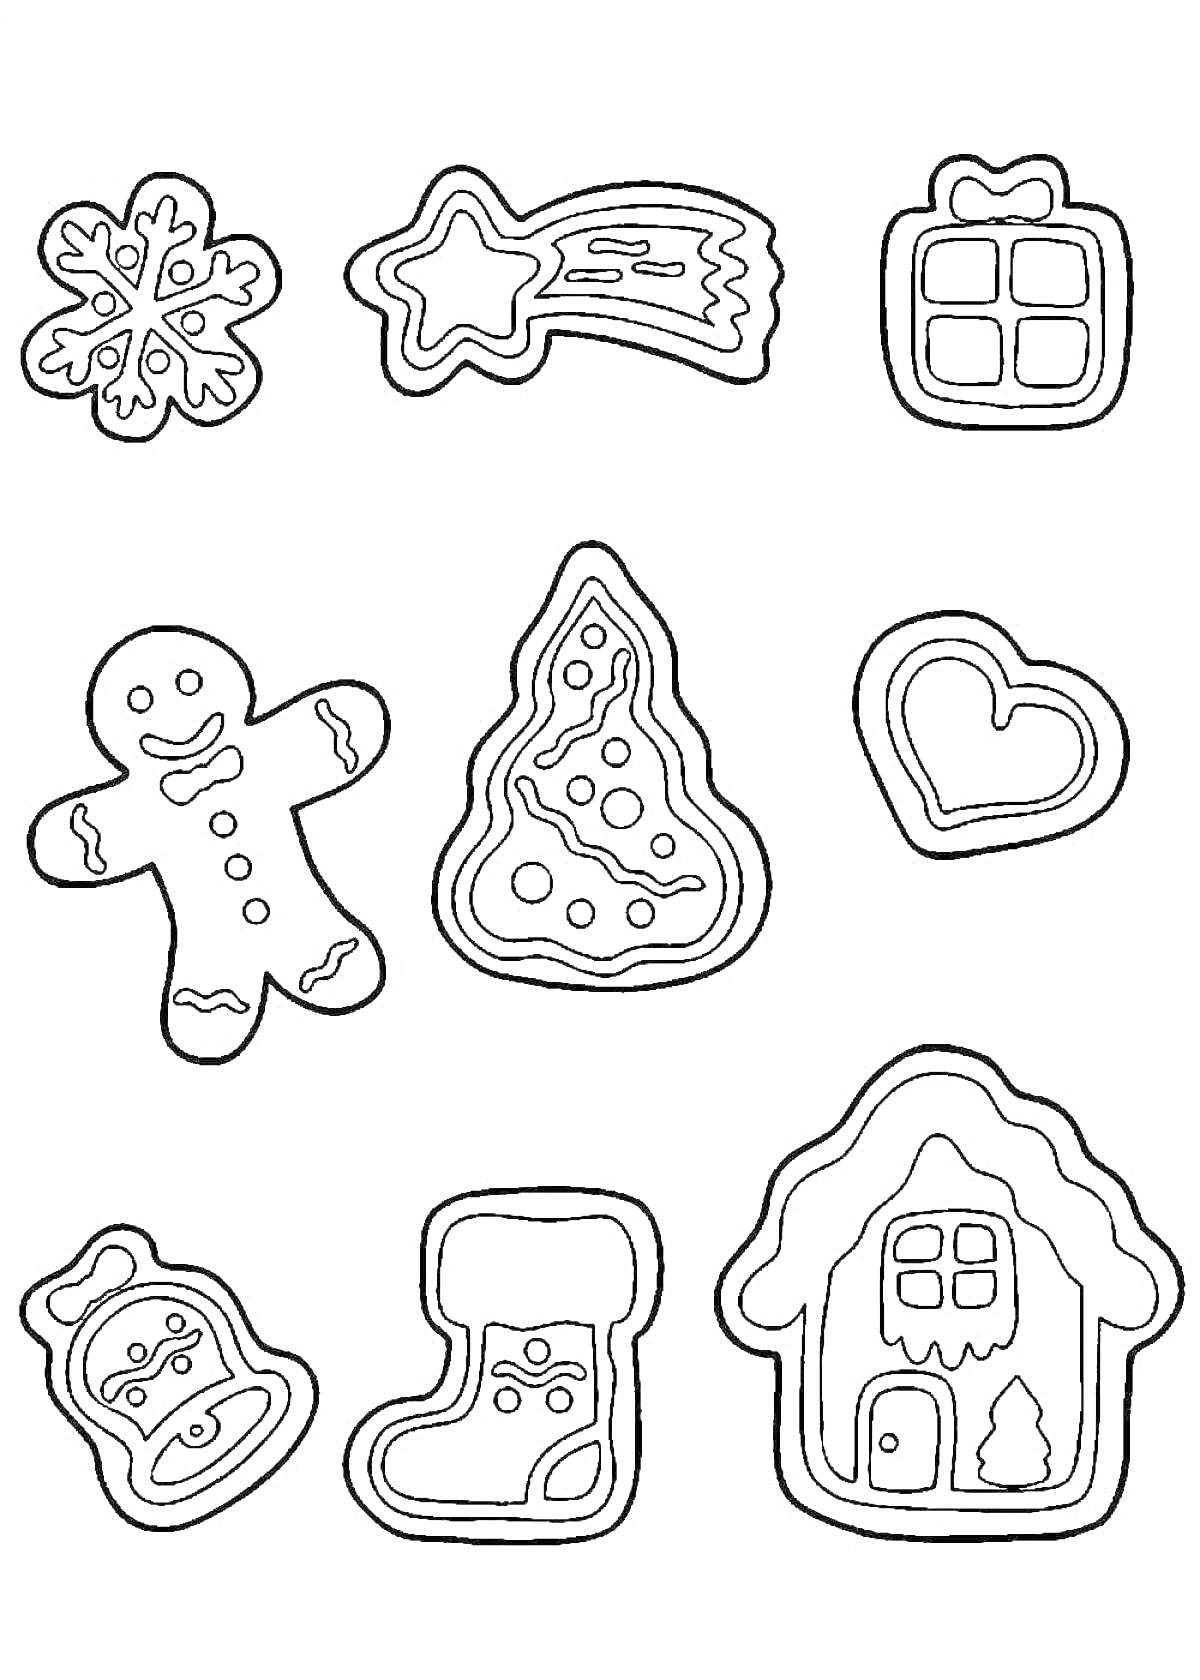 Раскраска Имбирное печенье: снежинка, падающая звезда, подарок, человечек, ёлка, сердечко, банк с вареньем, носок, домик